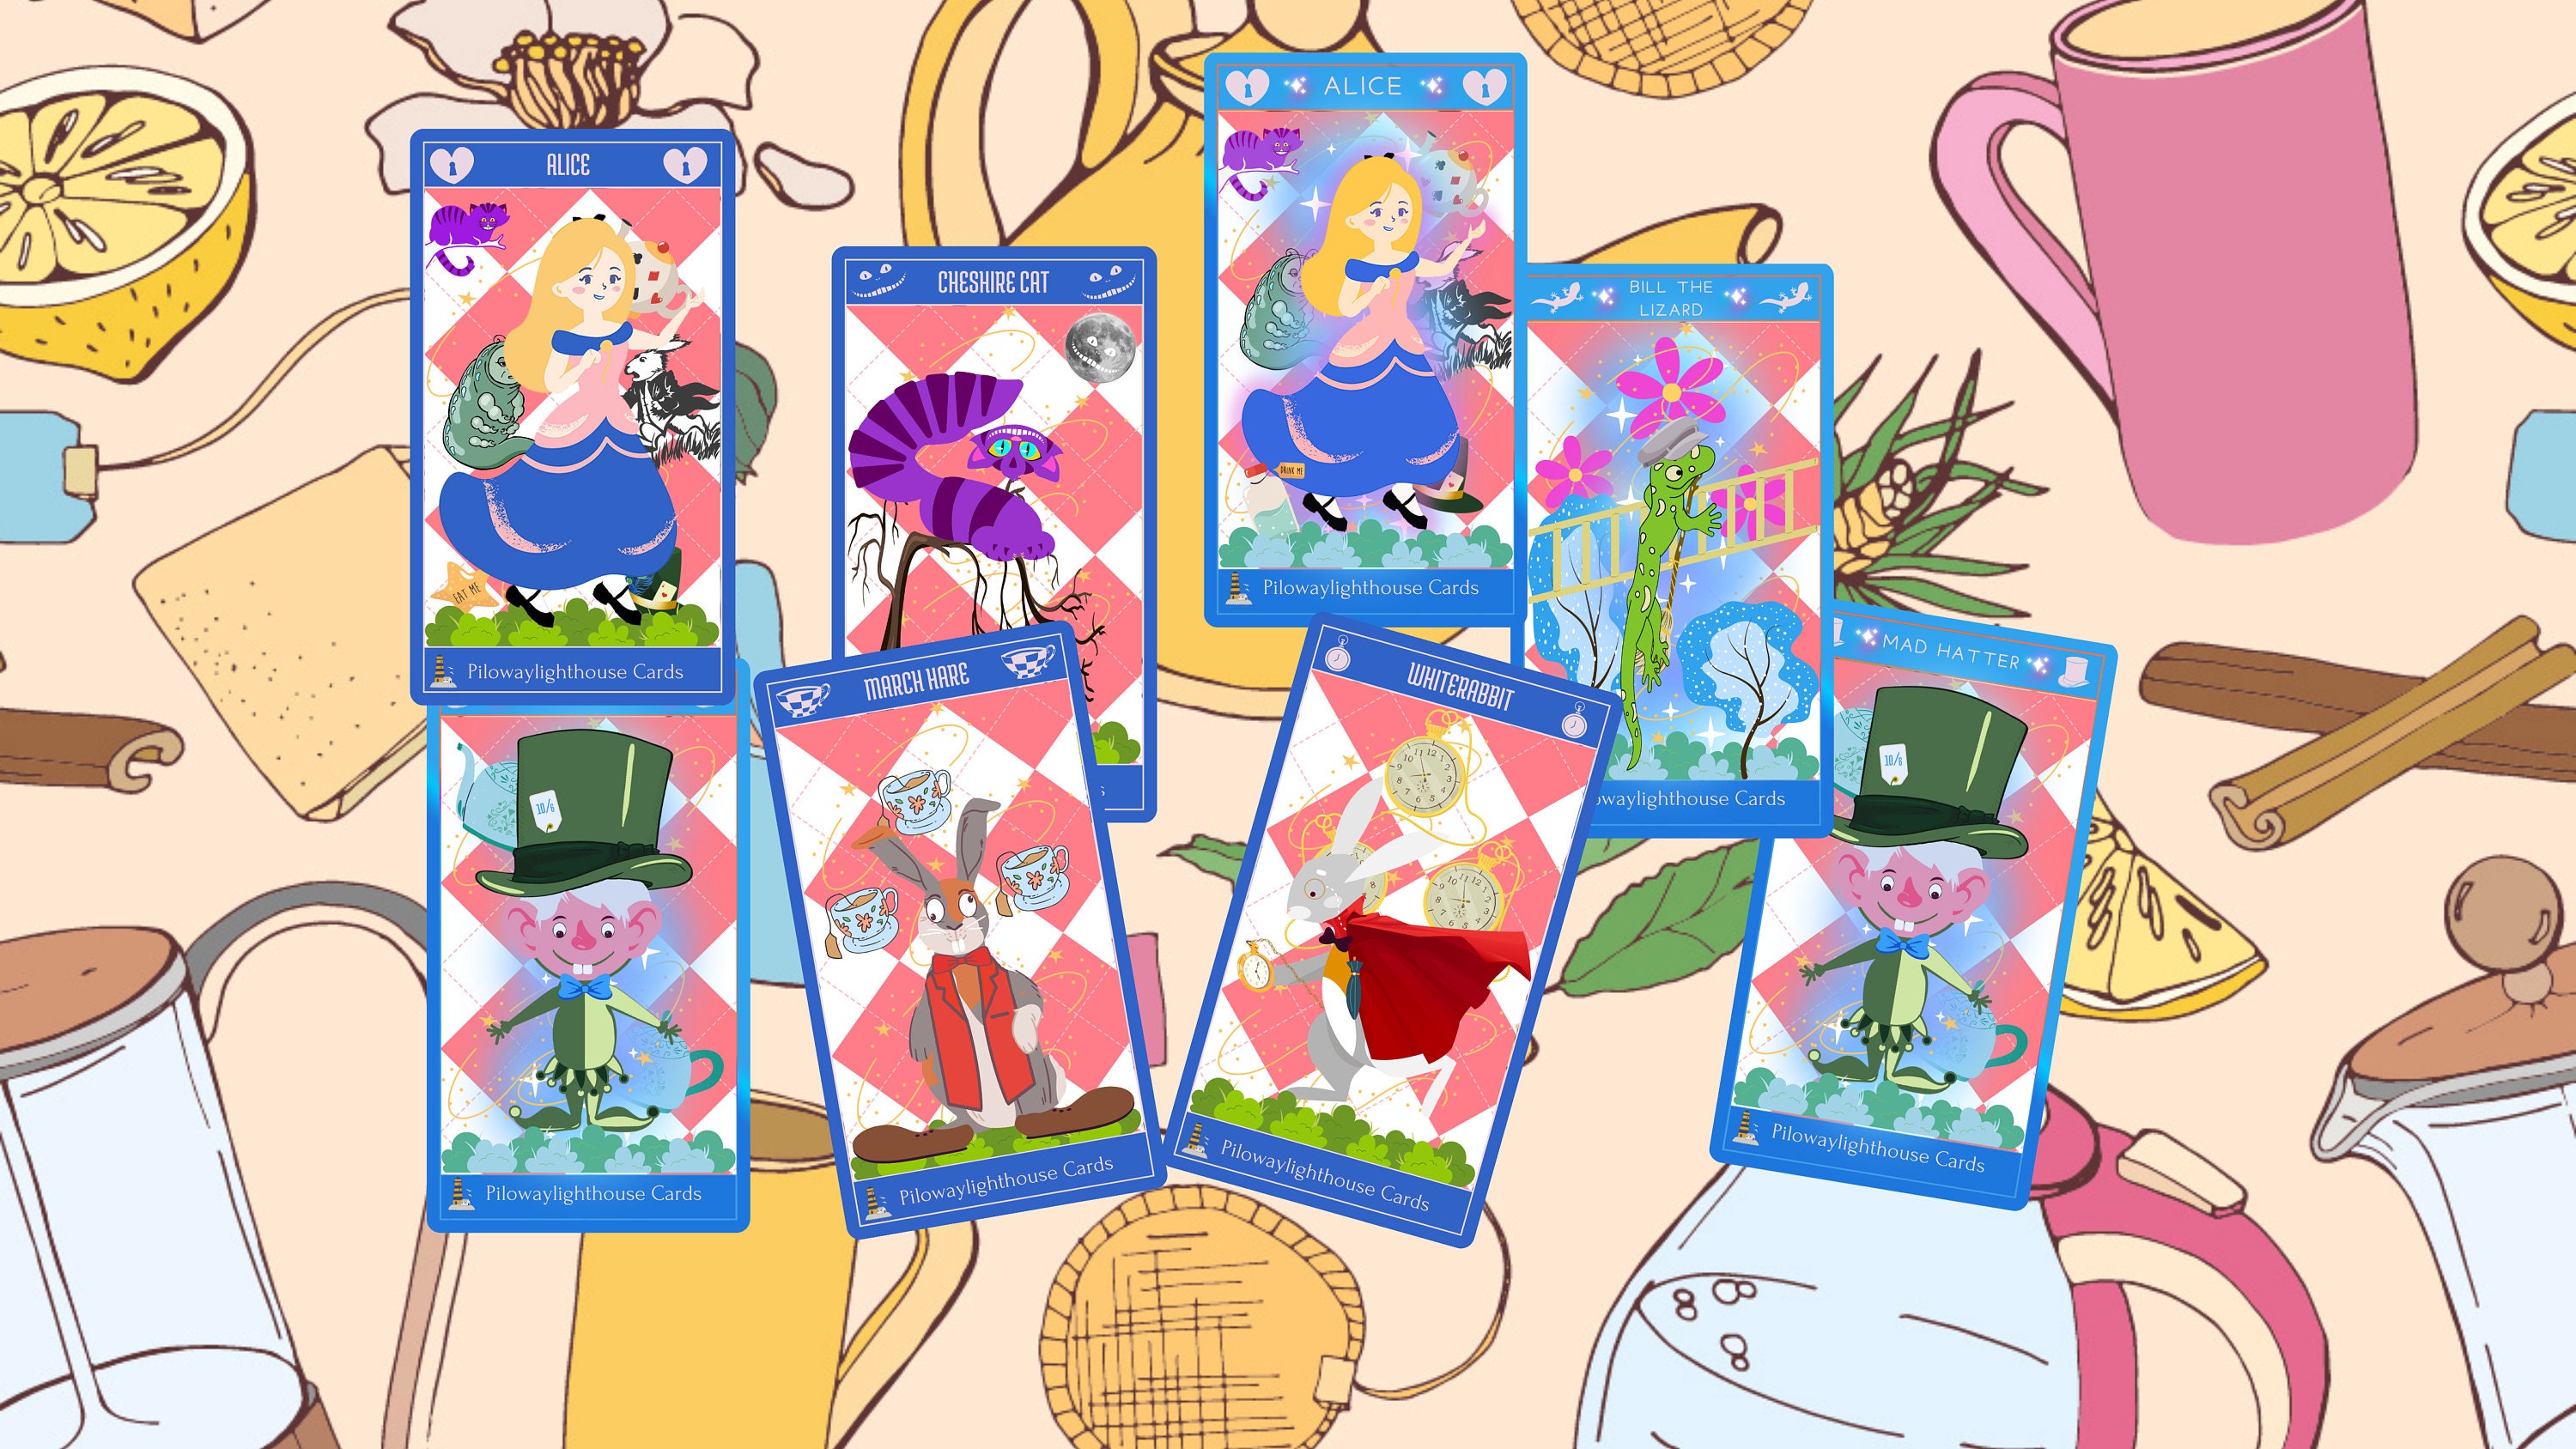 Alice in Wonderland Tarot Cards Digital Image Set 24 Separate Images  Digital Printable Instant Download 5081 (Download Now) 